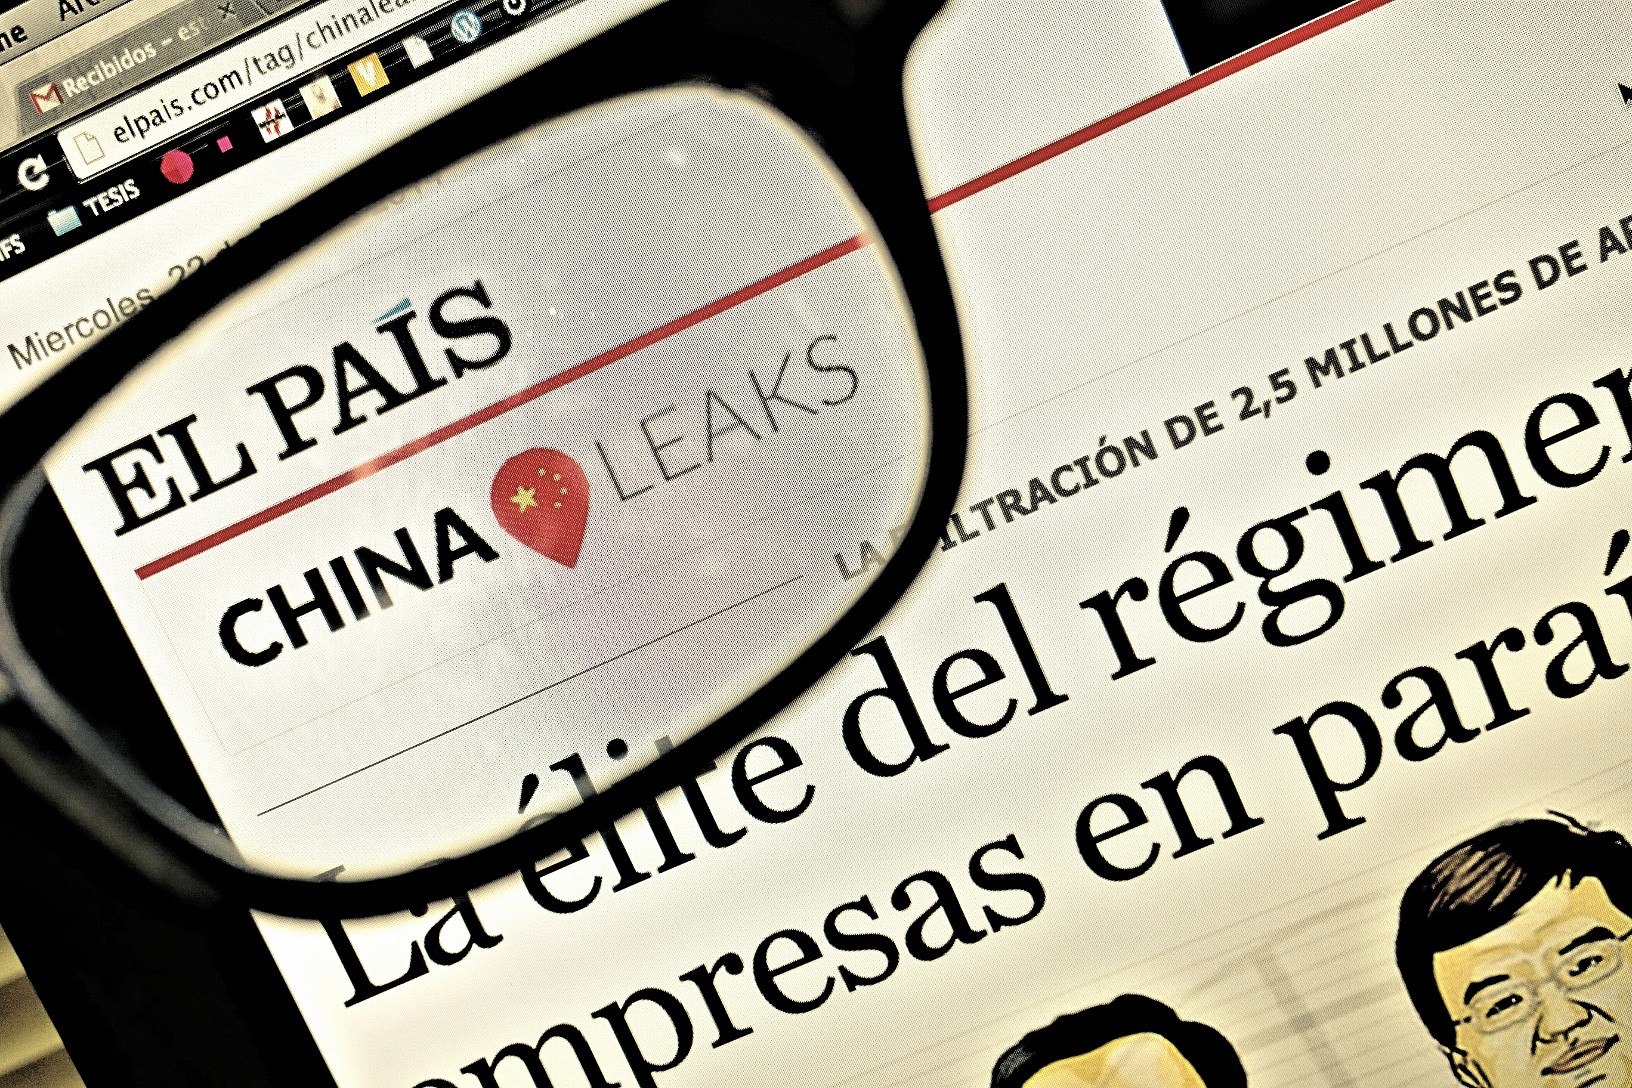 La web del diario español El País, desbloqueada en China tras 3 años y medio